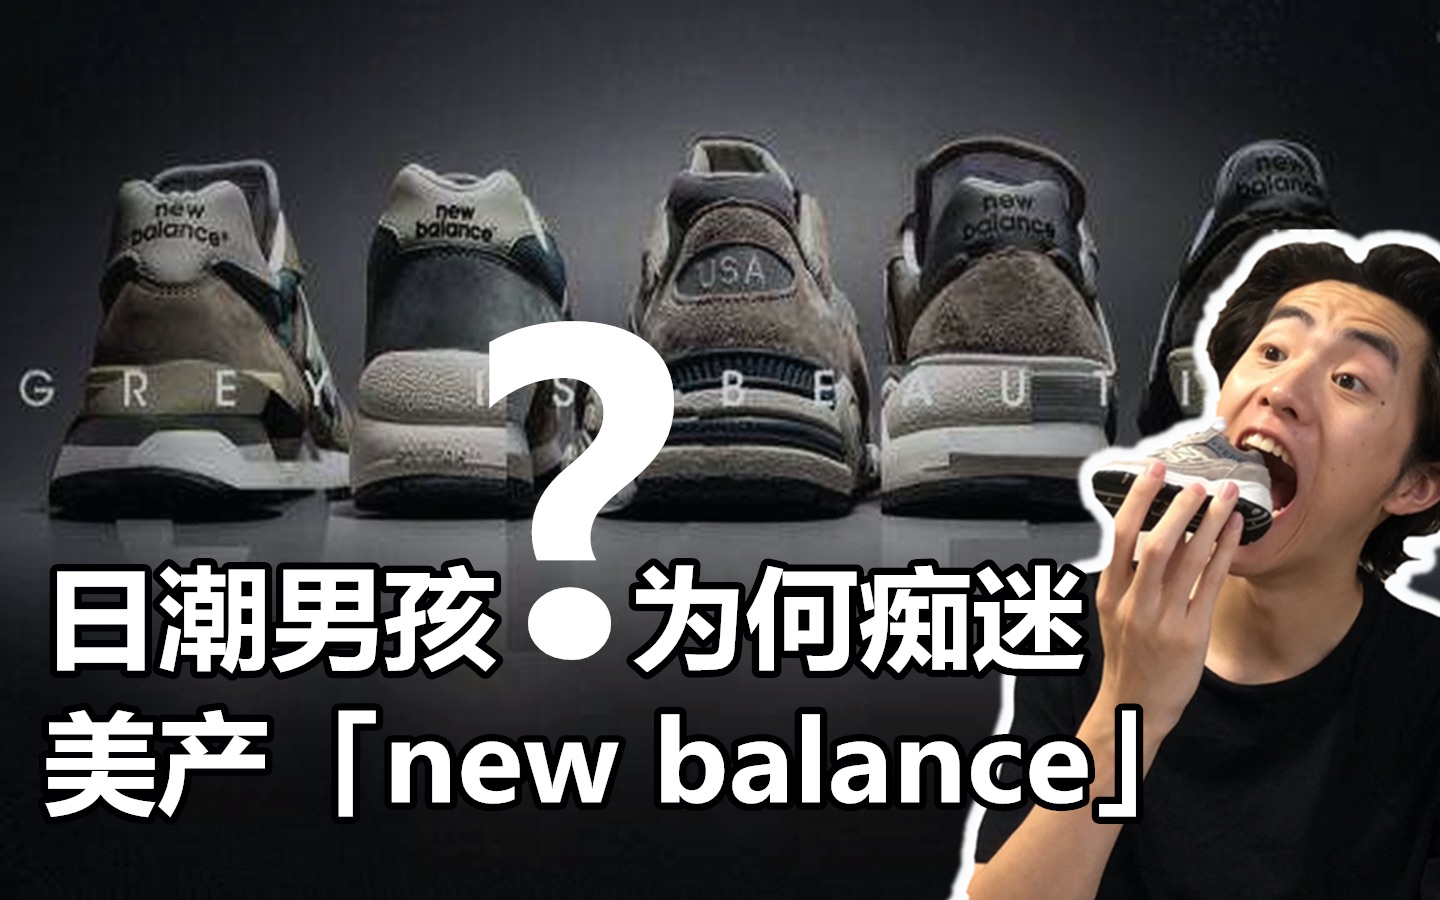 new balance 99gry